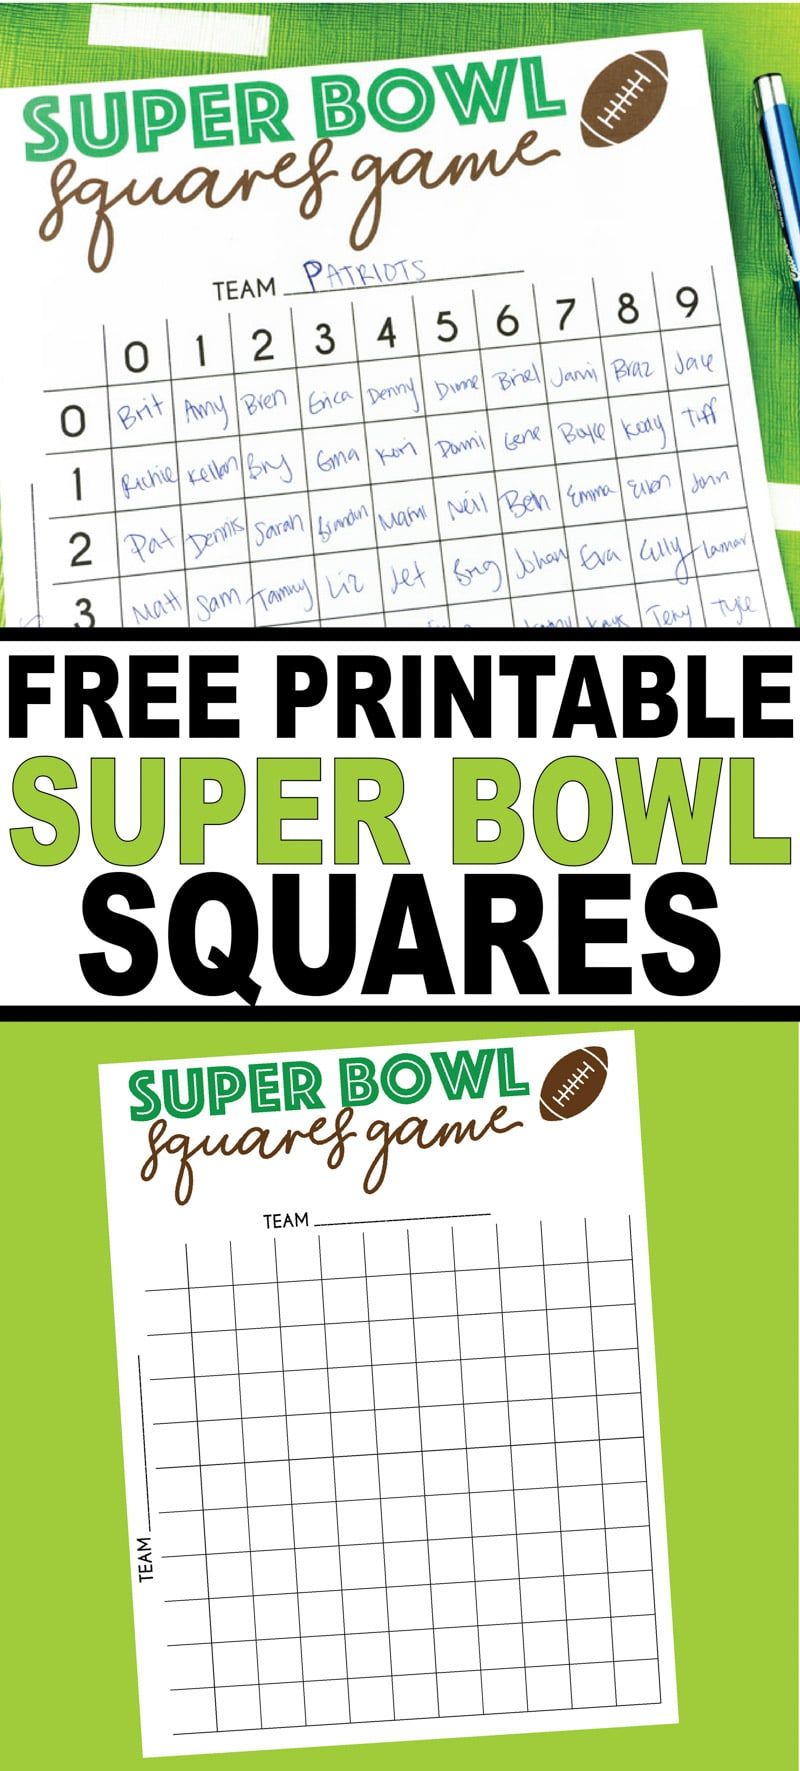 ¡Tablero de juego de cuadrados del Super Bowl para imprimir gratis! Perfecto para divertirse en el Super Bowl o para ver un partido de fútbol.